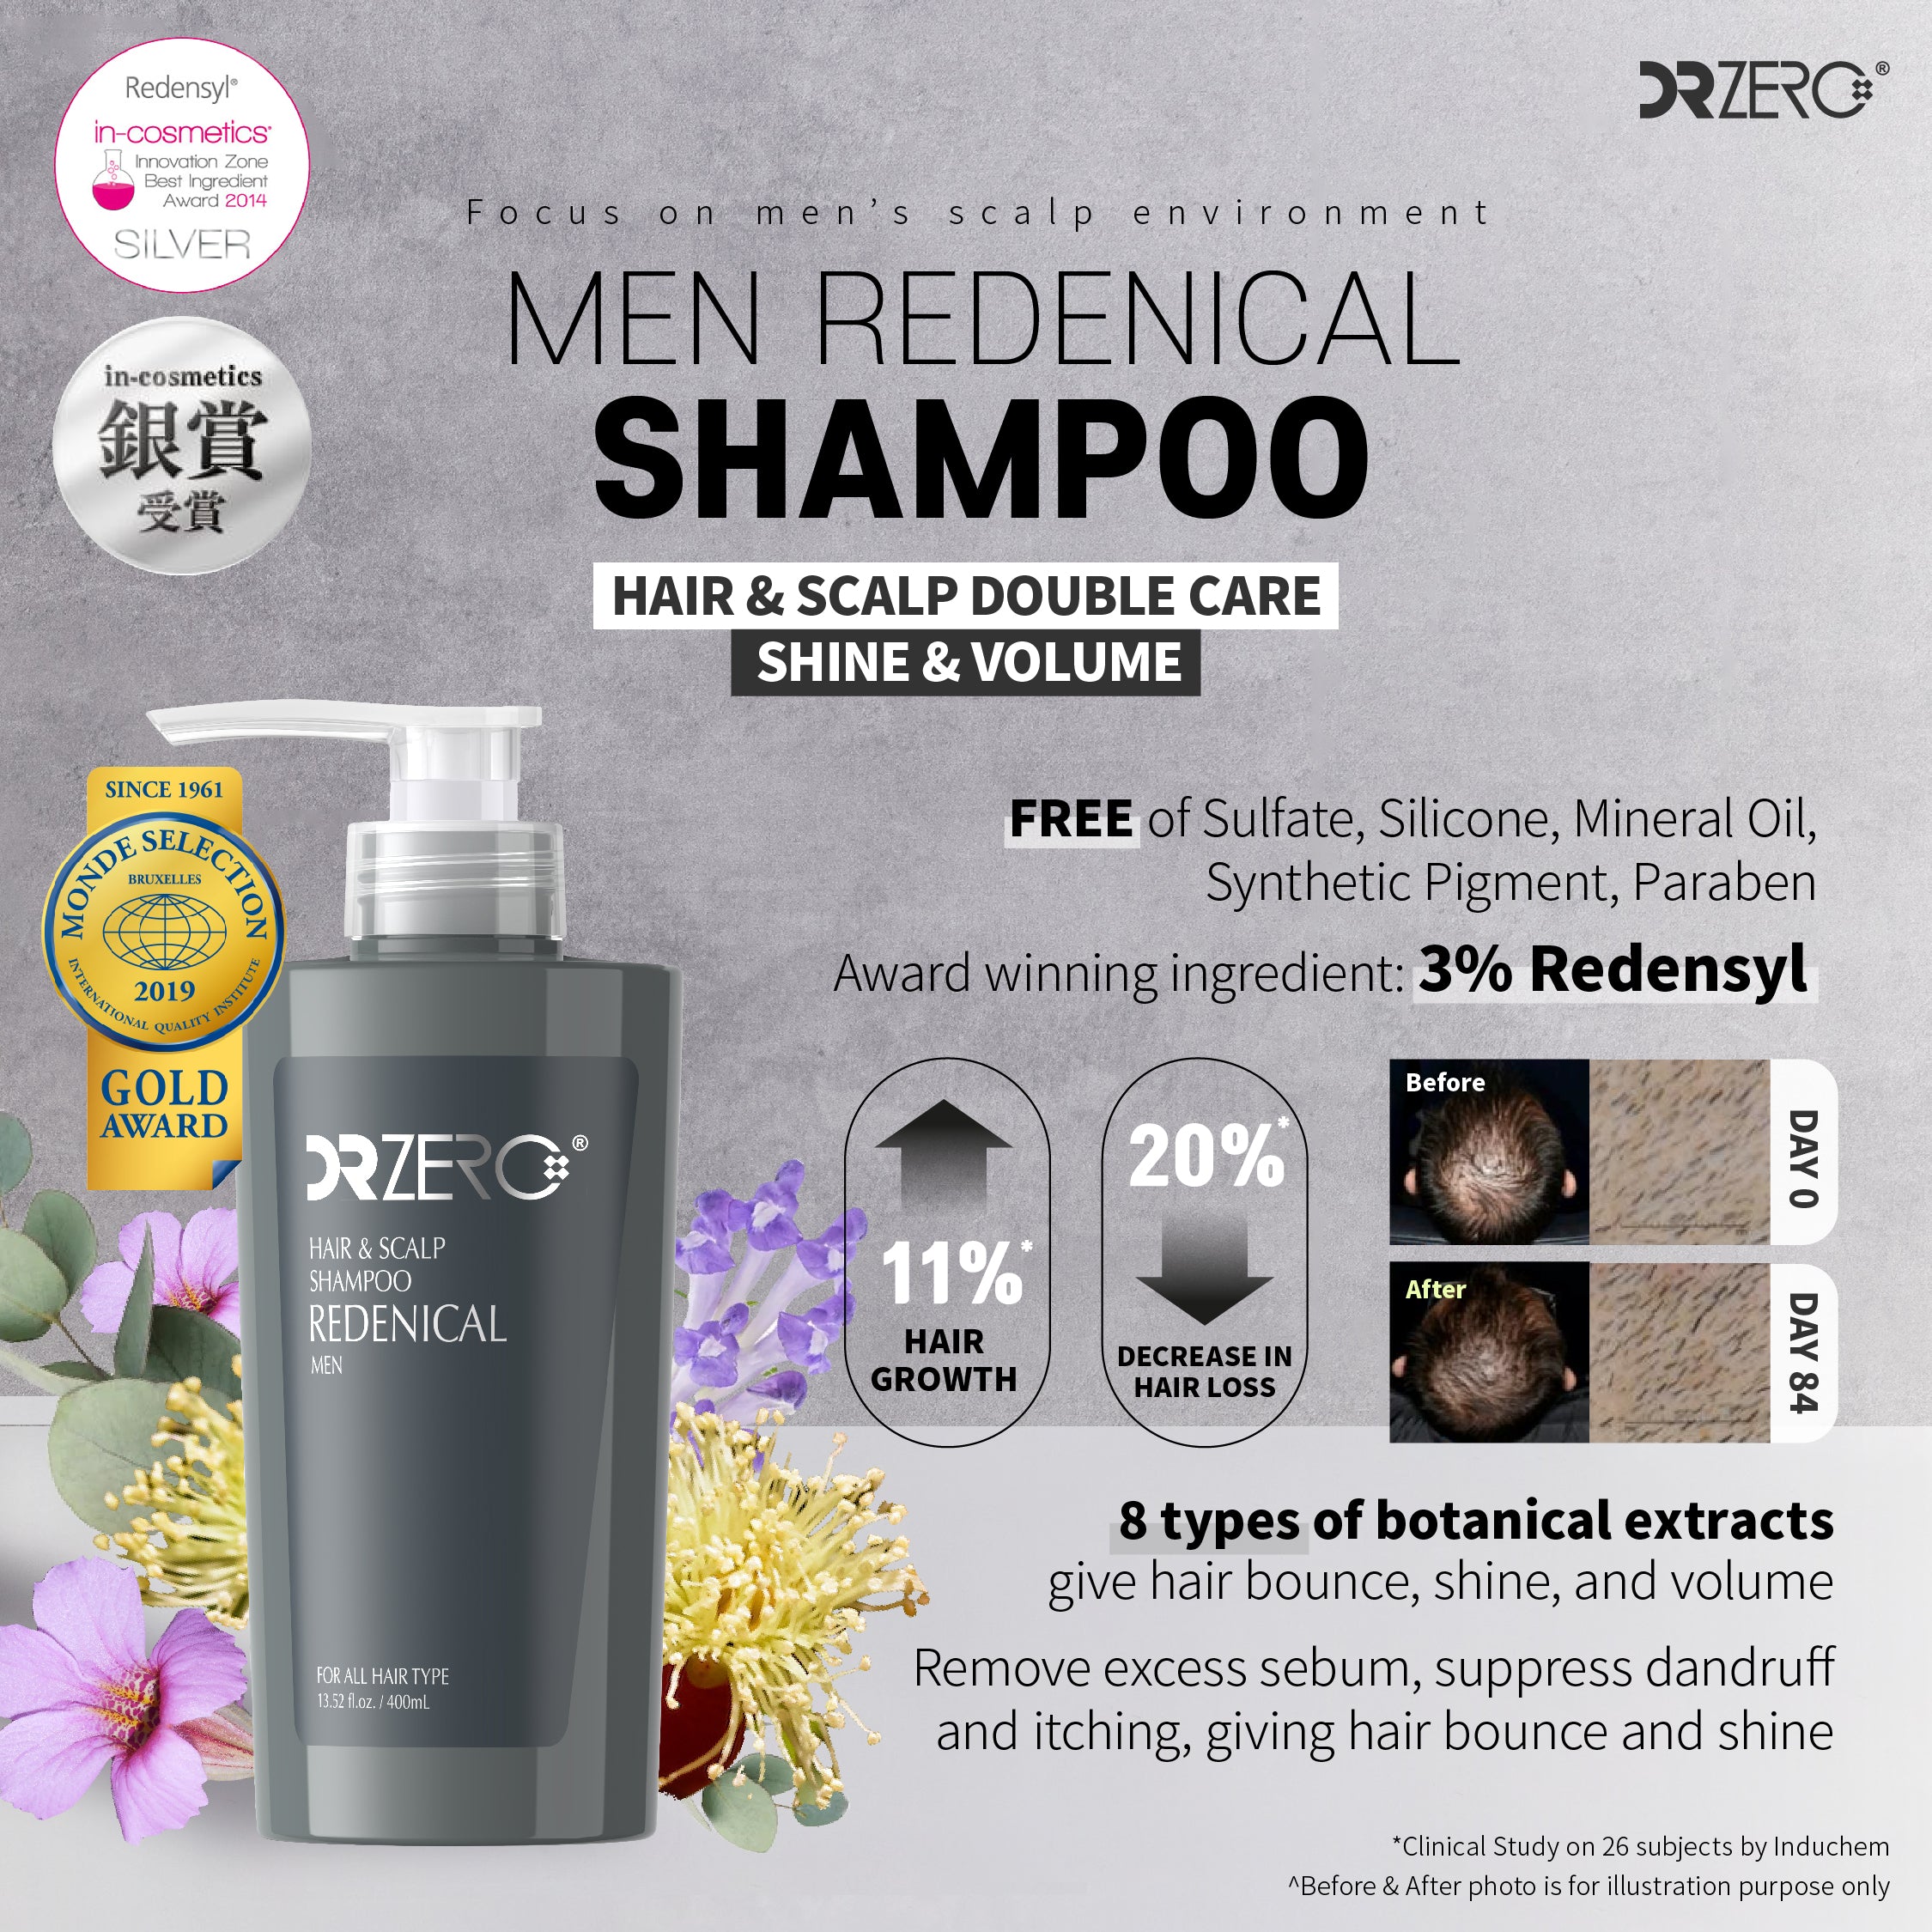 DR ZERO Male Redenical Shampoo